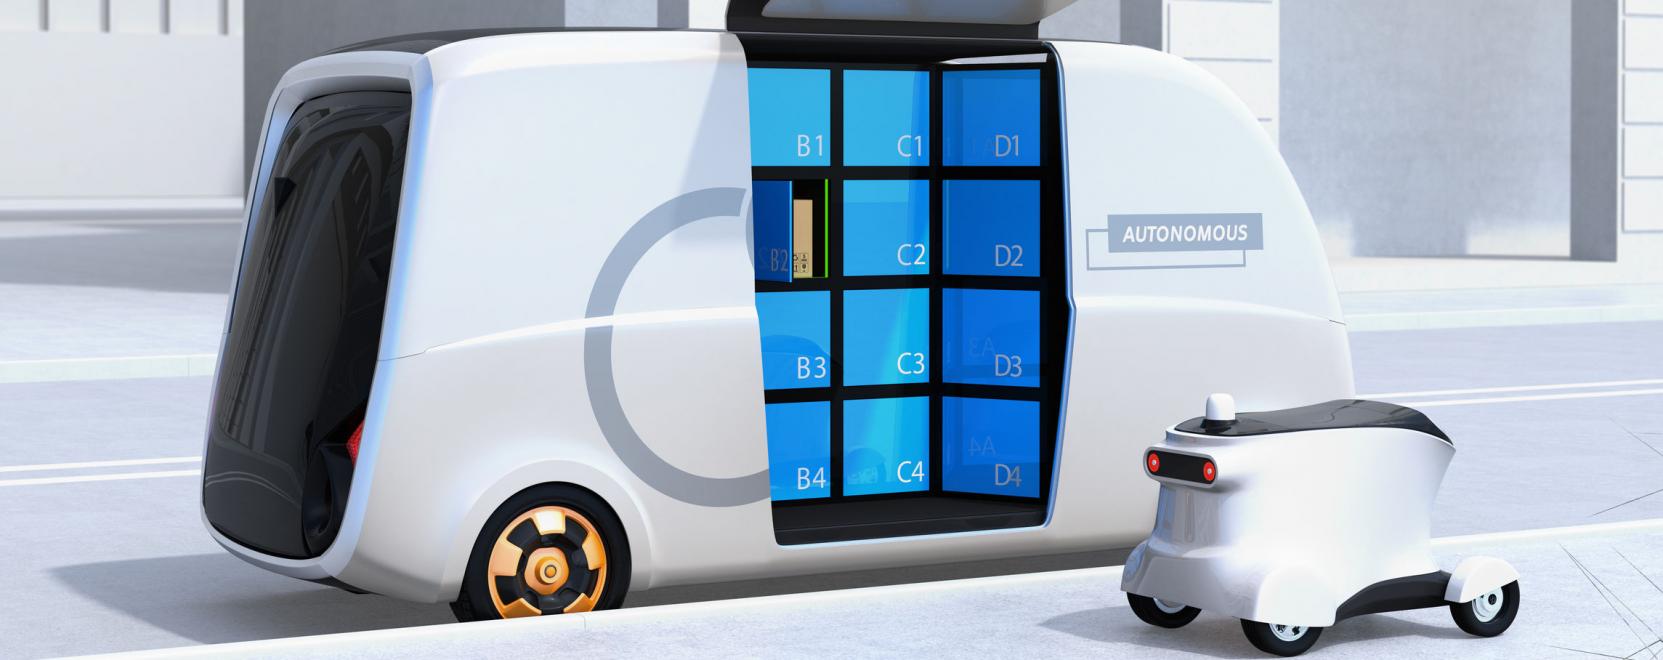 Robotokkal szállna be az ételkiszállításba a Hyundai